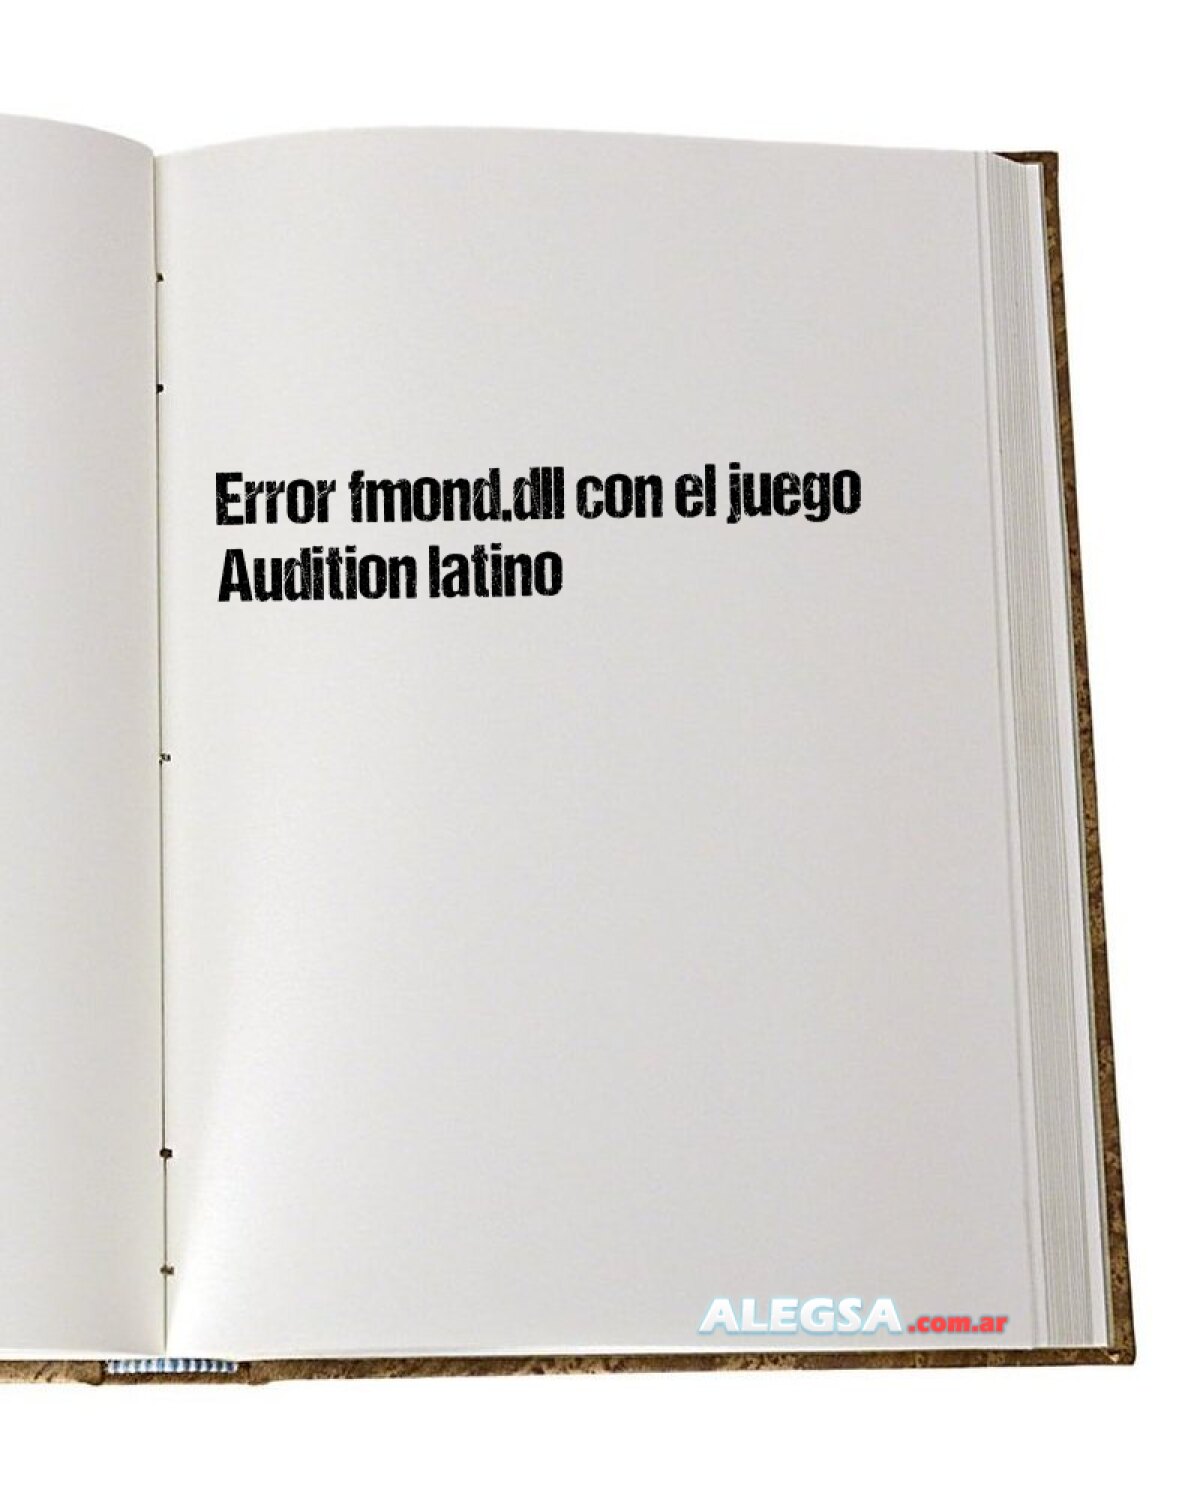 Error fmond.dll con el juego Audition latino